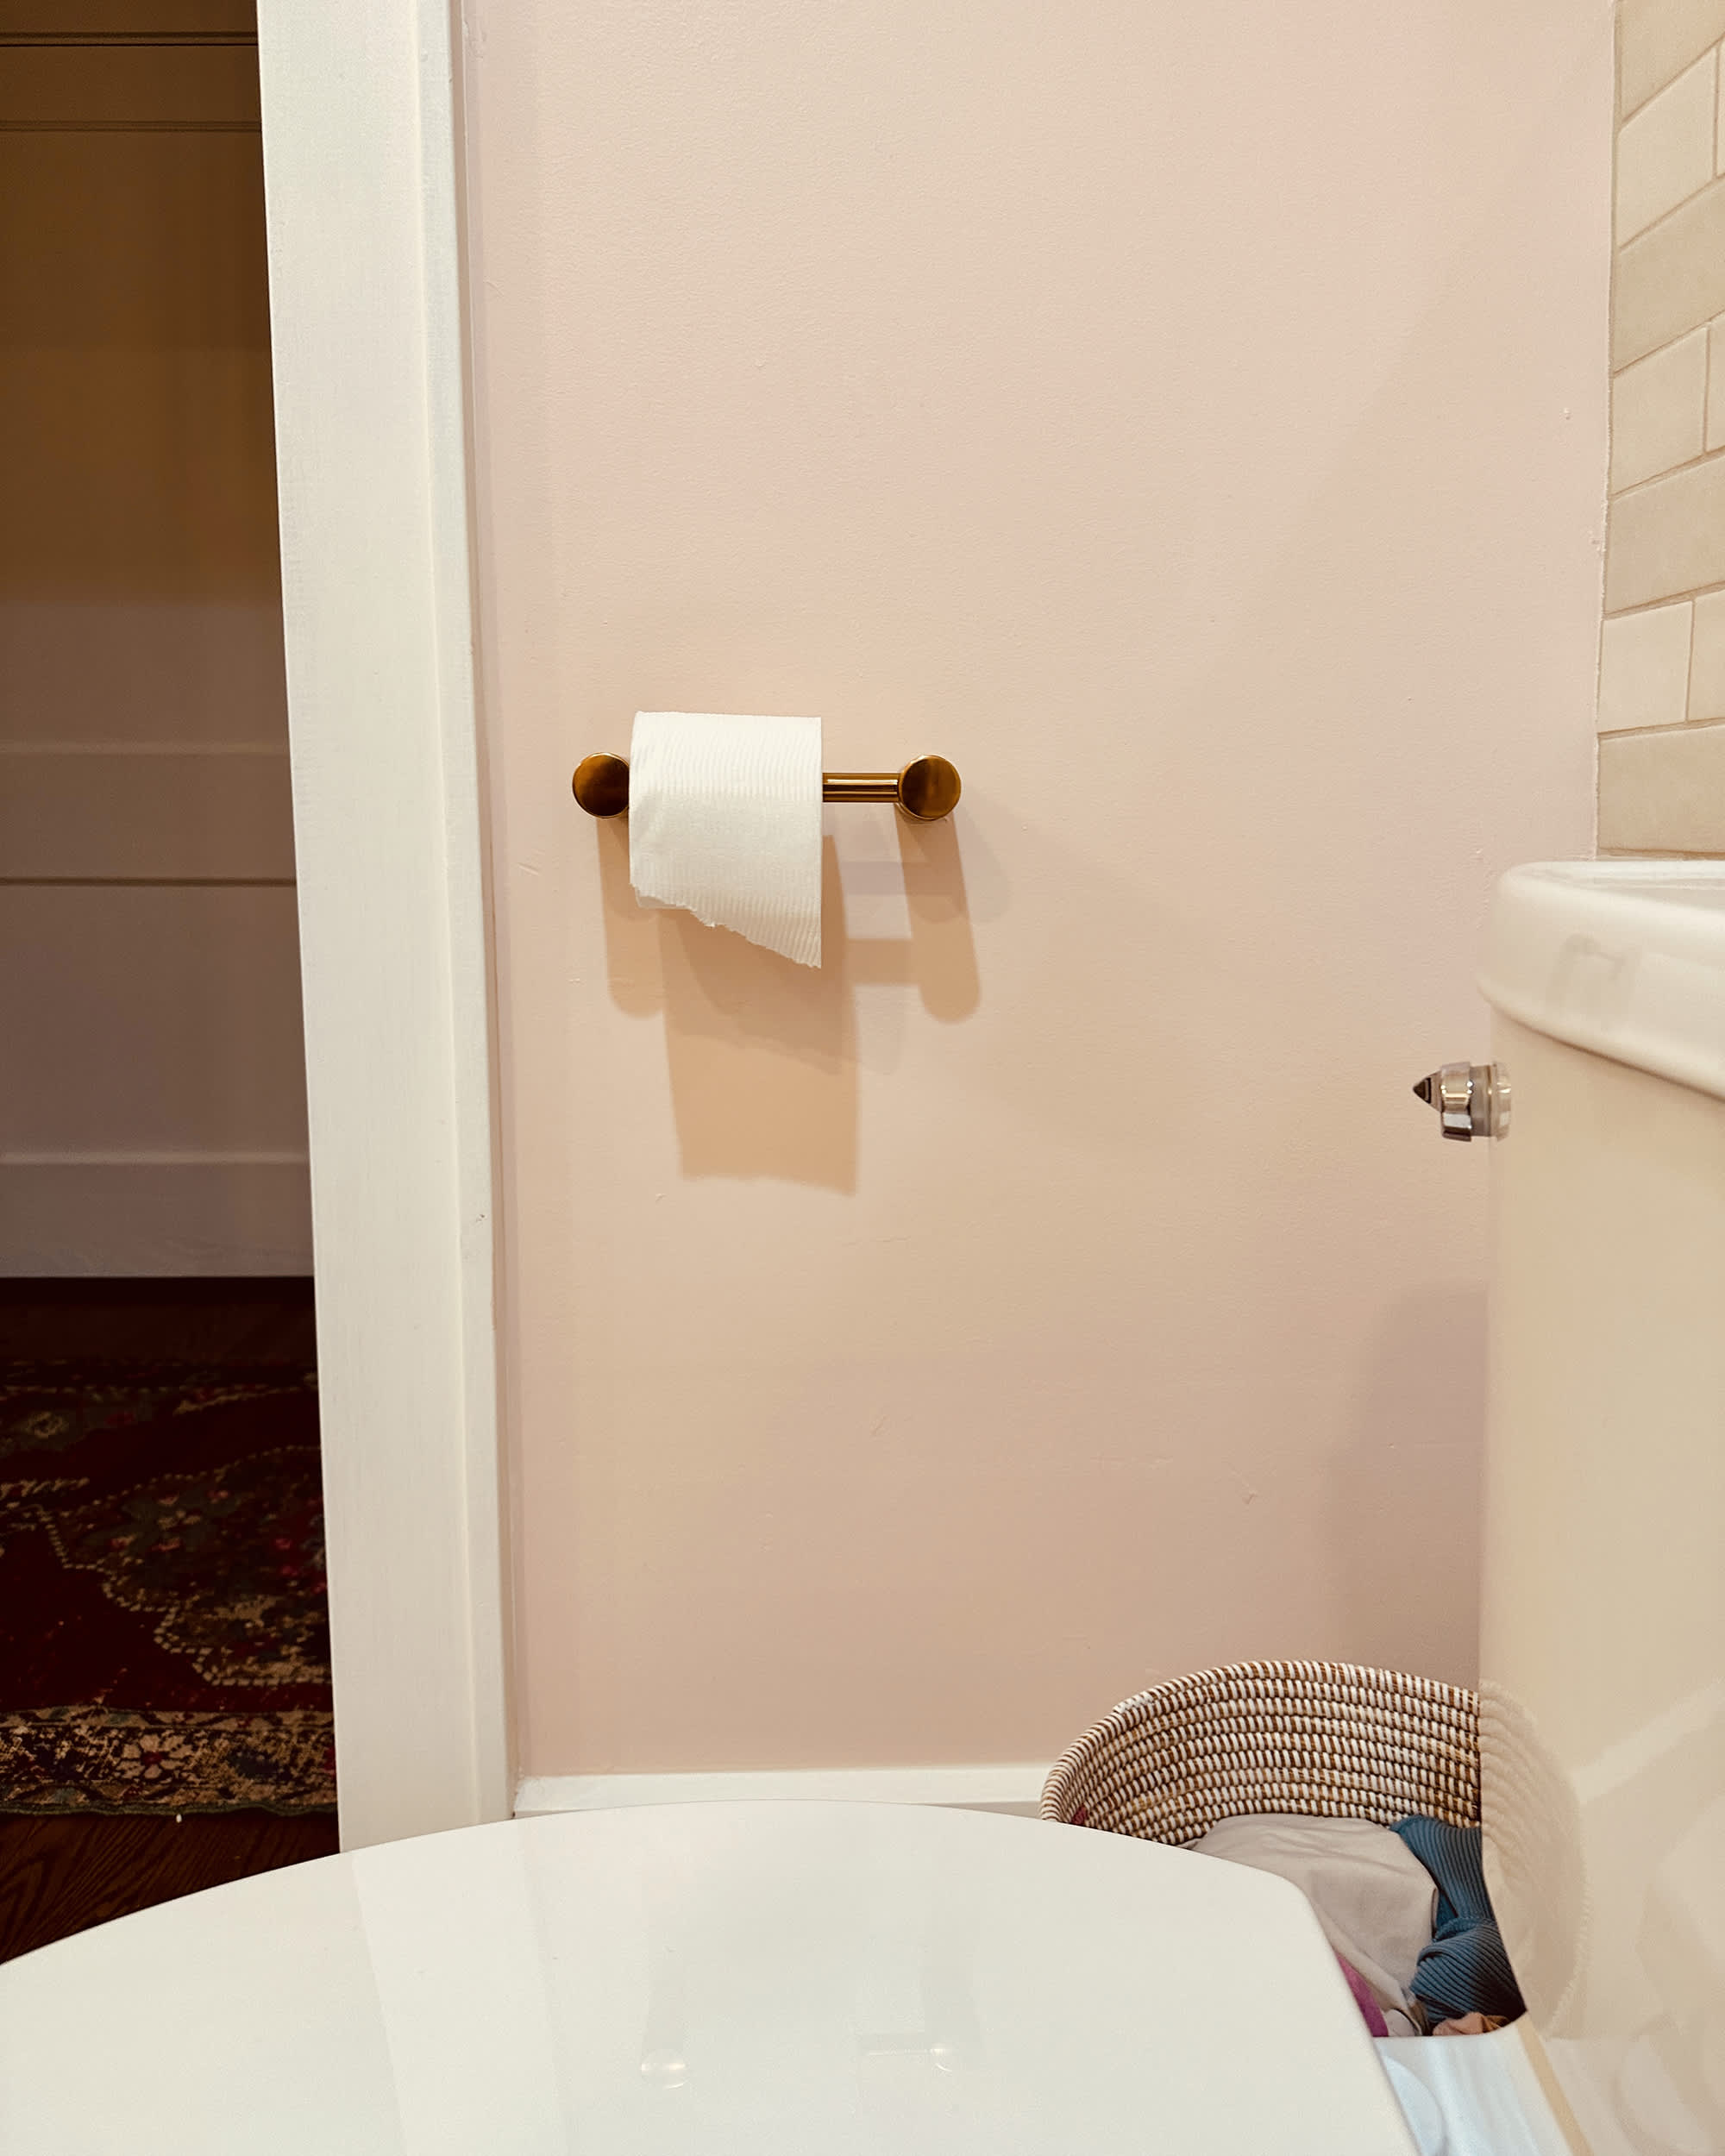 https://cdn.apartmenttherapy.info/image/upload/v1688073576/at/shopping/2023-07/toilet-paper-holder/moen-align-tp-holder-3.jpg